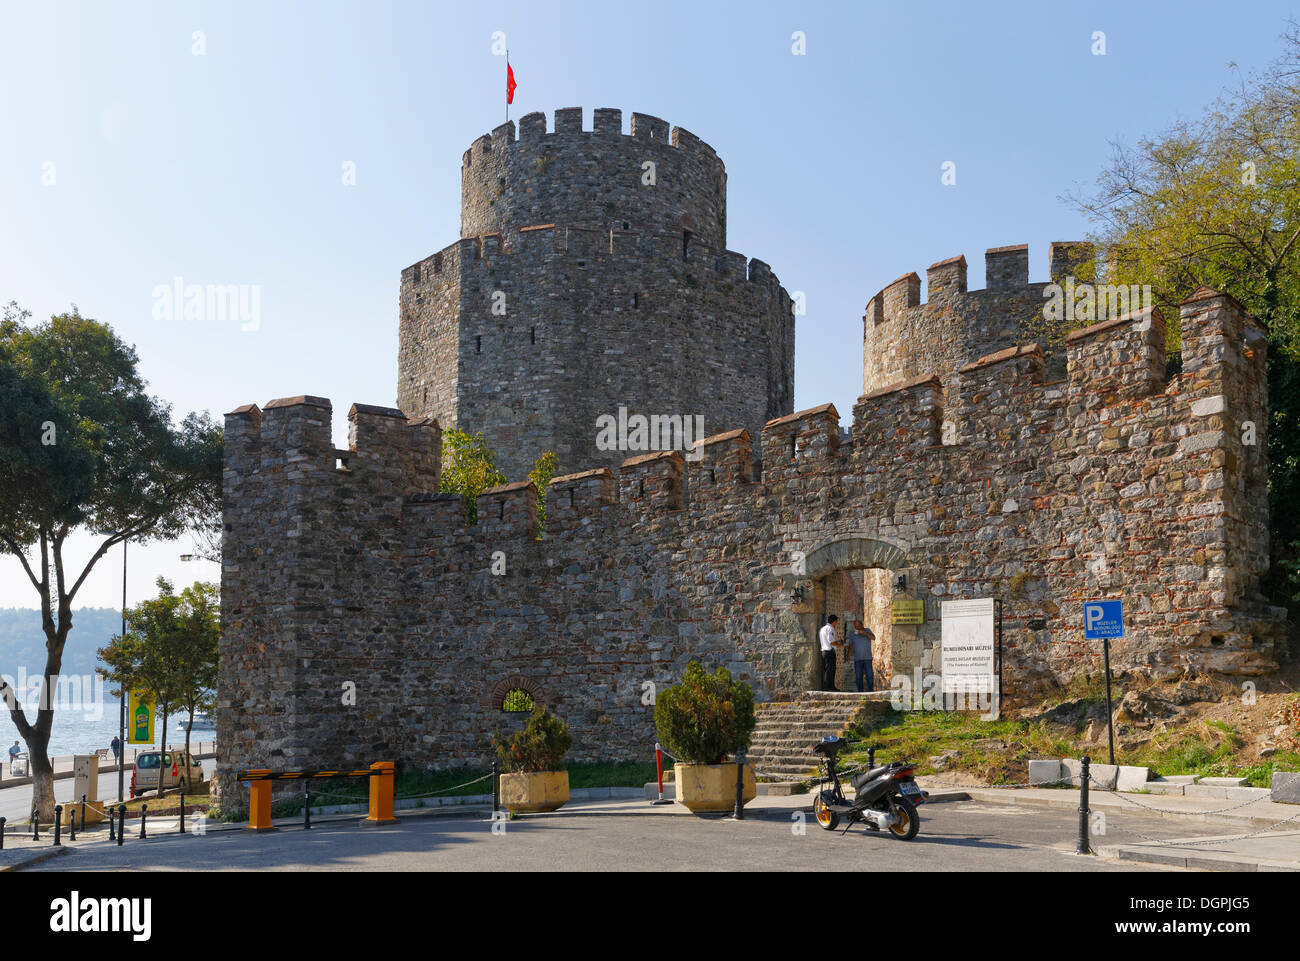 La forteresse européenne de Rumelihisarı Rumelian ou château, Bosphore, Rumelihisari, Sariyer, Istanbul, côté Européen Banque D'Images